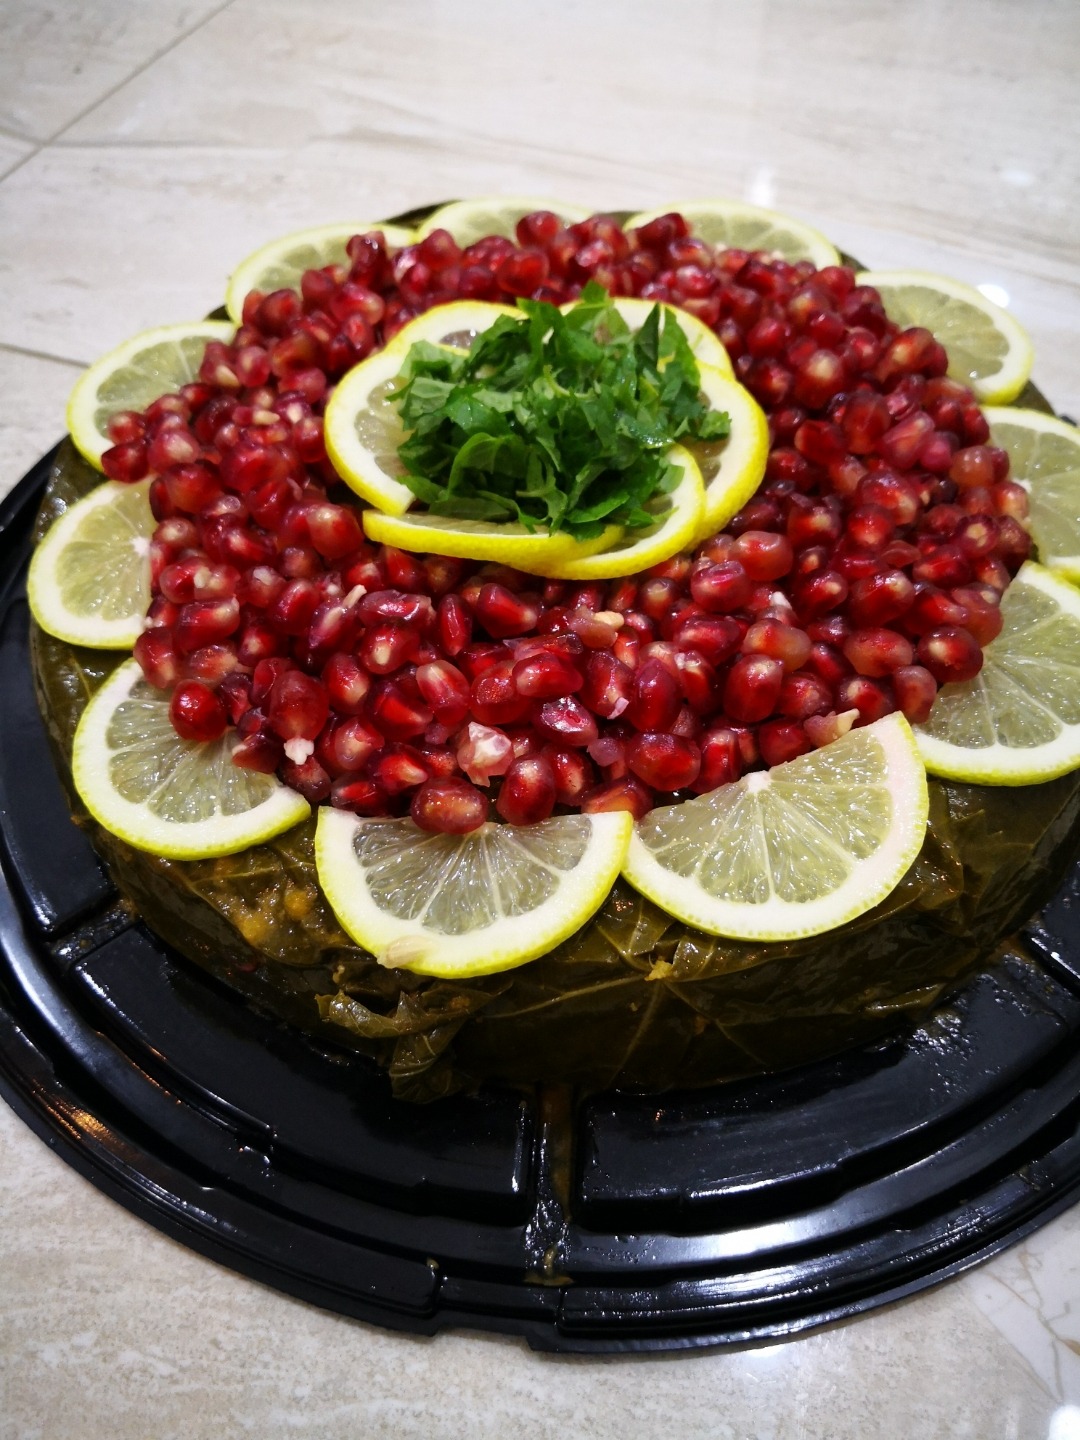 كعكة الورق عنب 😋🤤 @ Jwana kitchen - البحرين